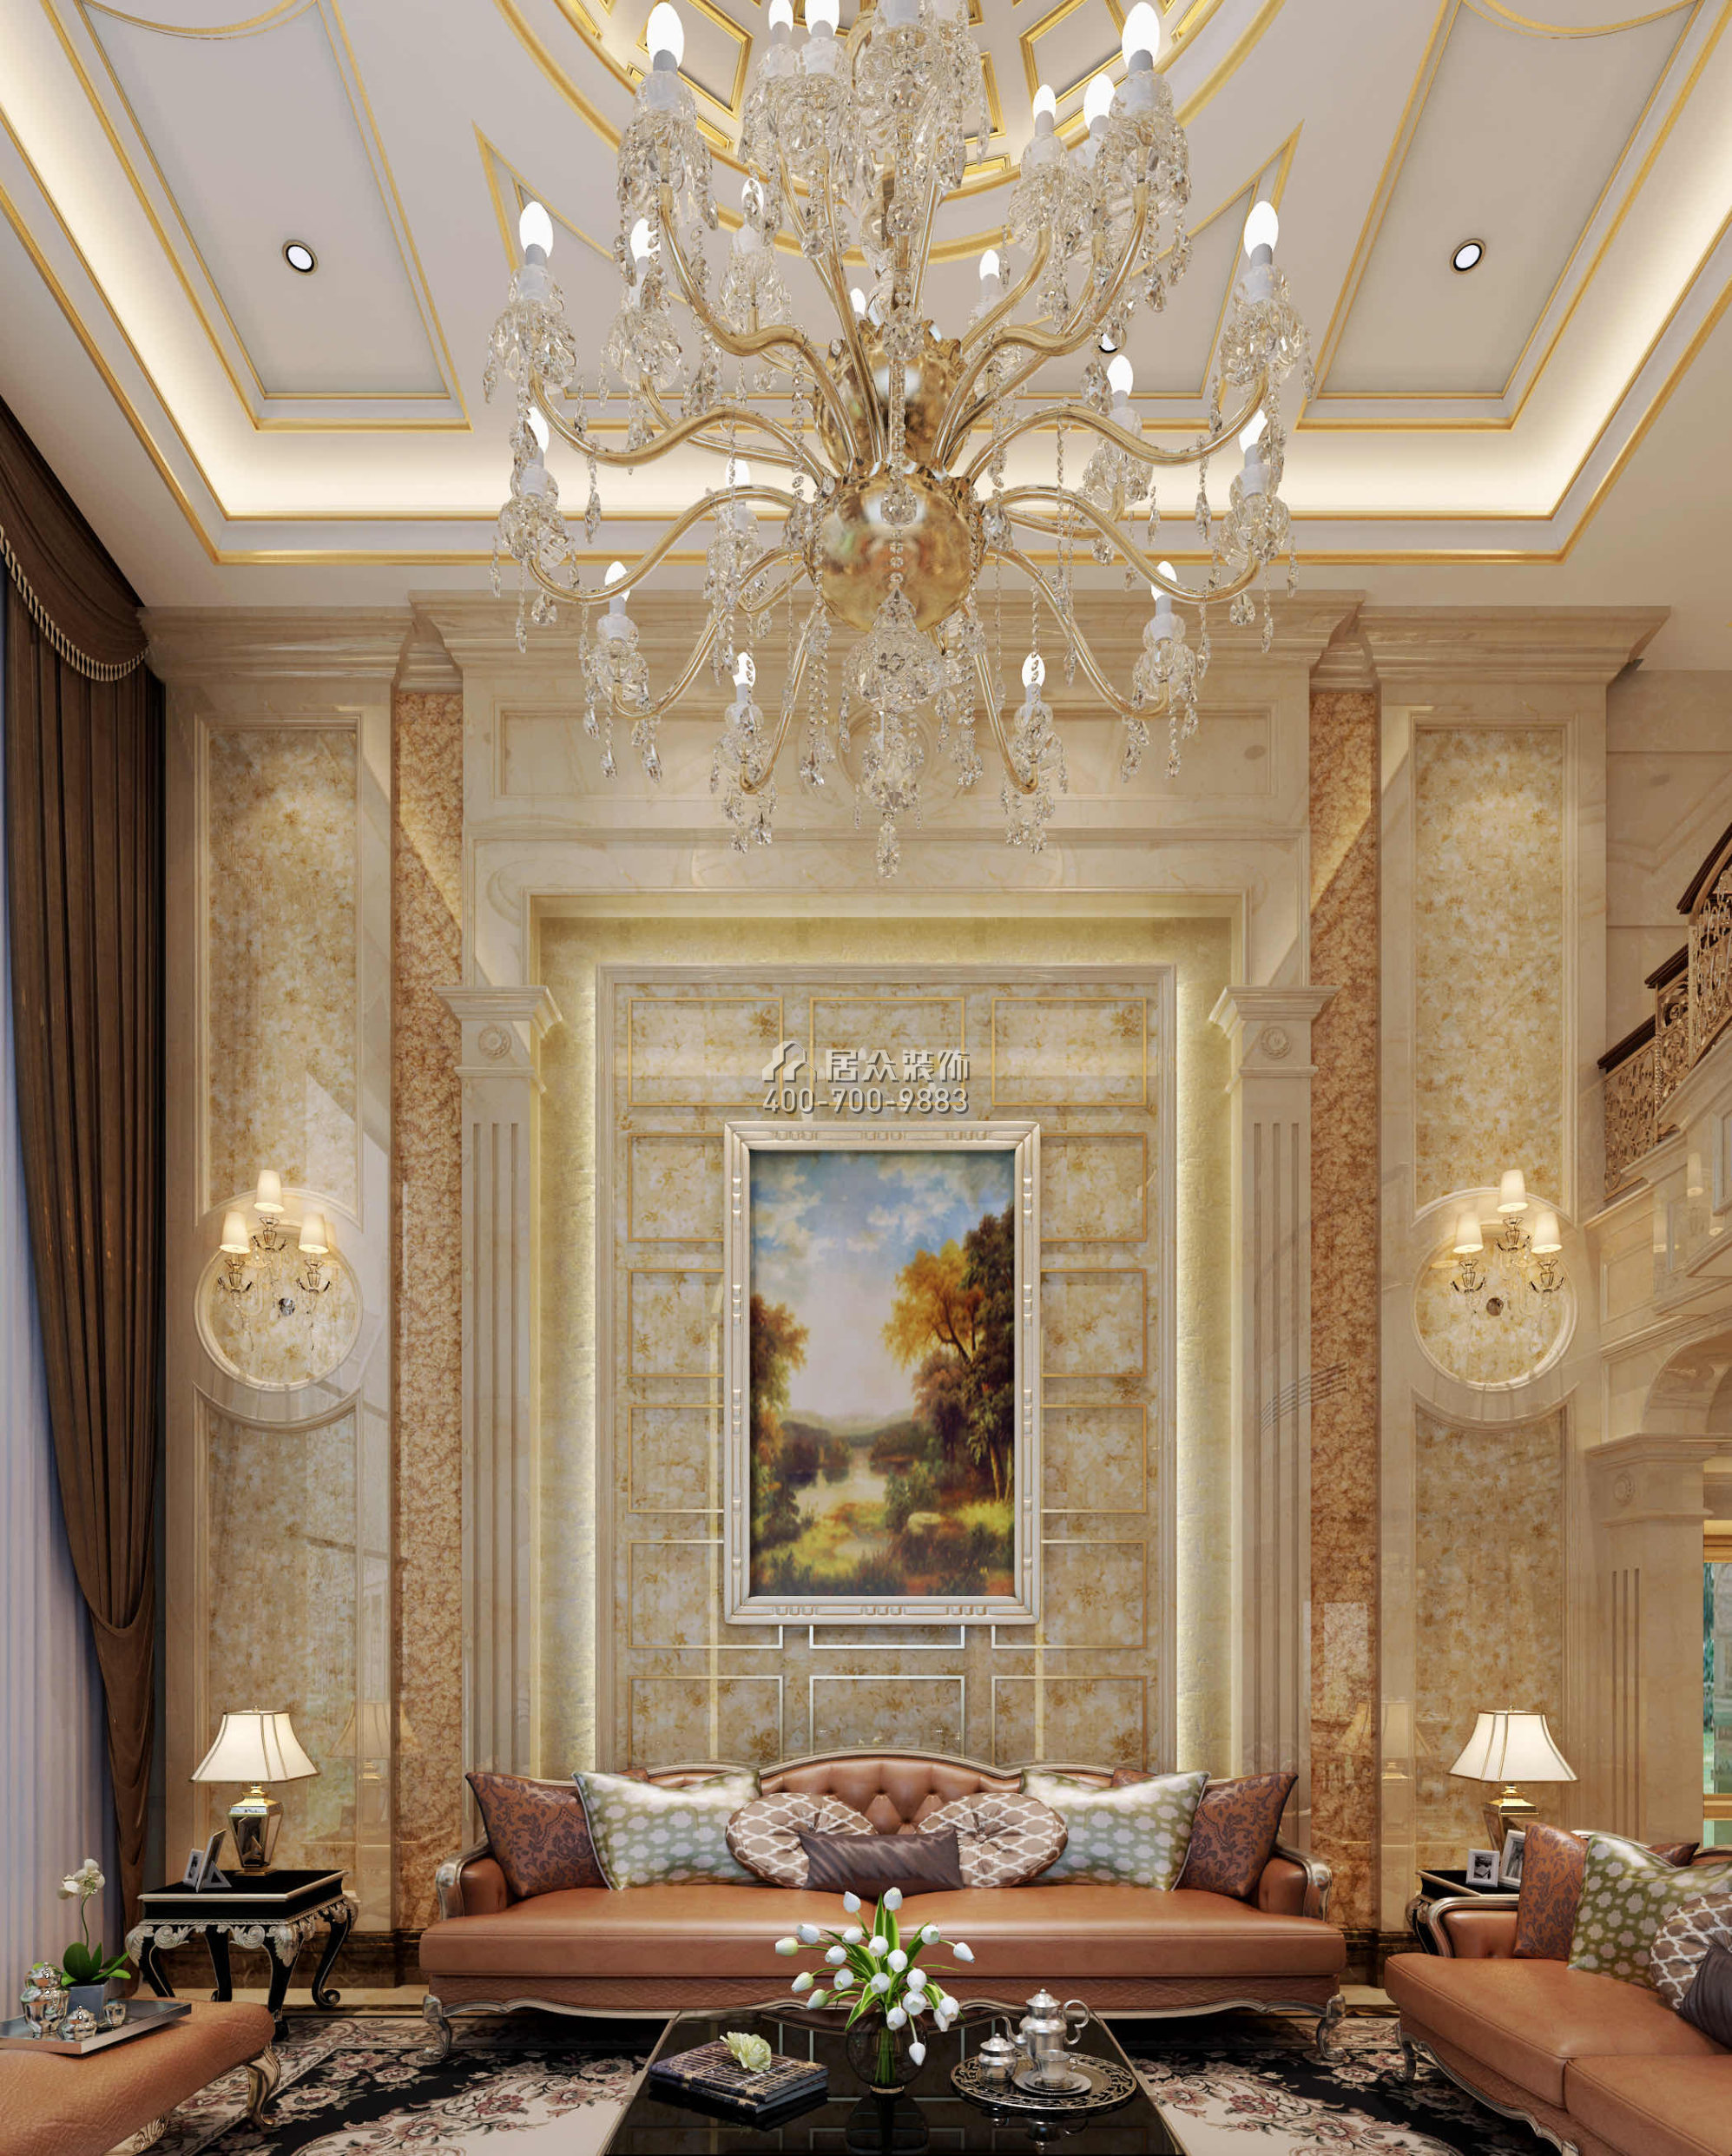 海逸豪庭800平方米欧式风格别墅户型客厅装修效果图